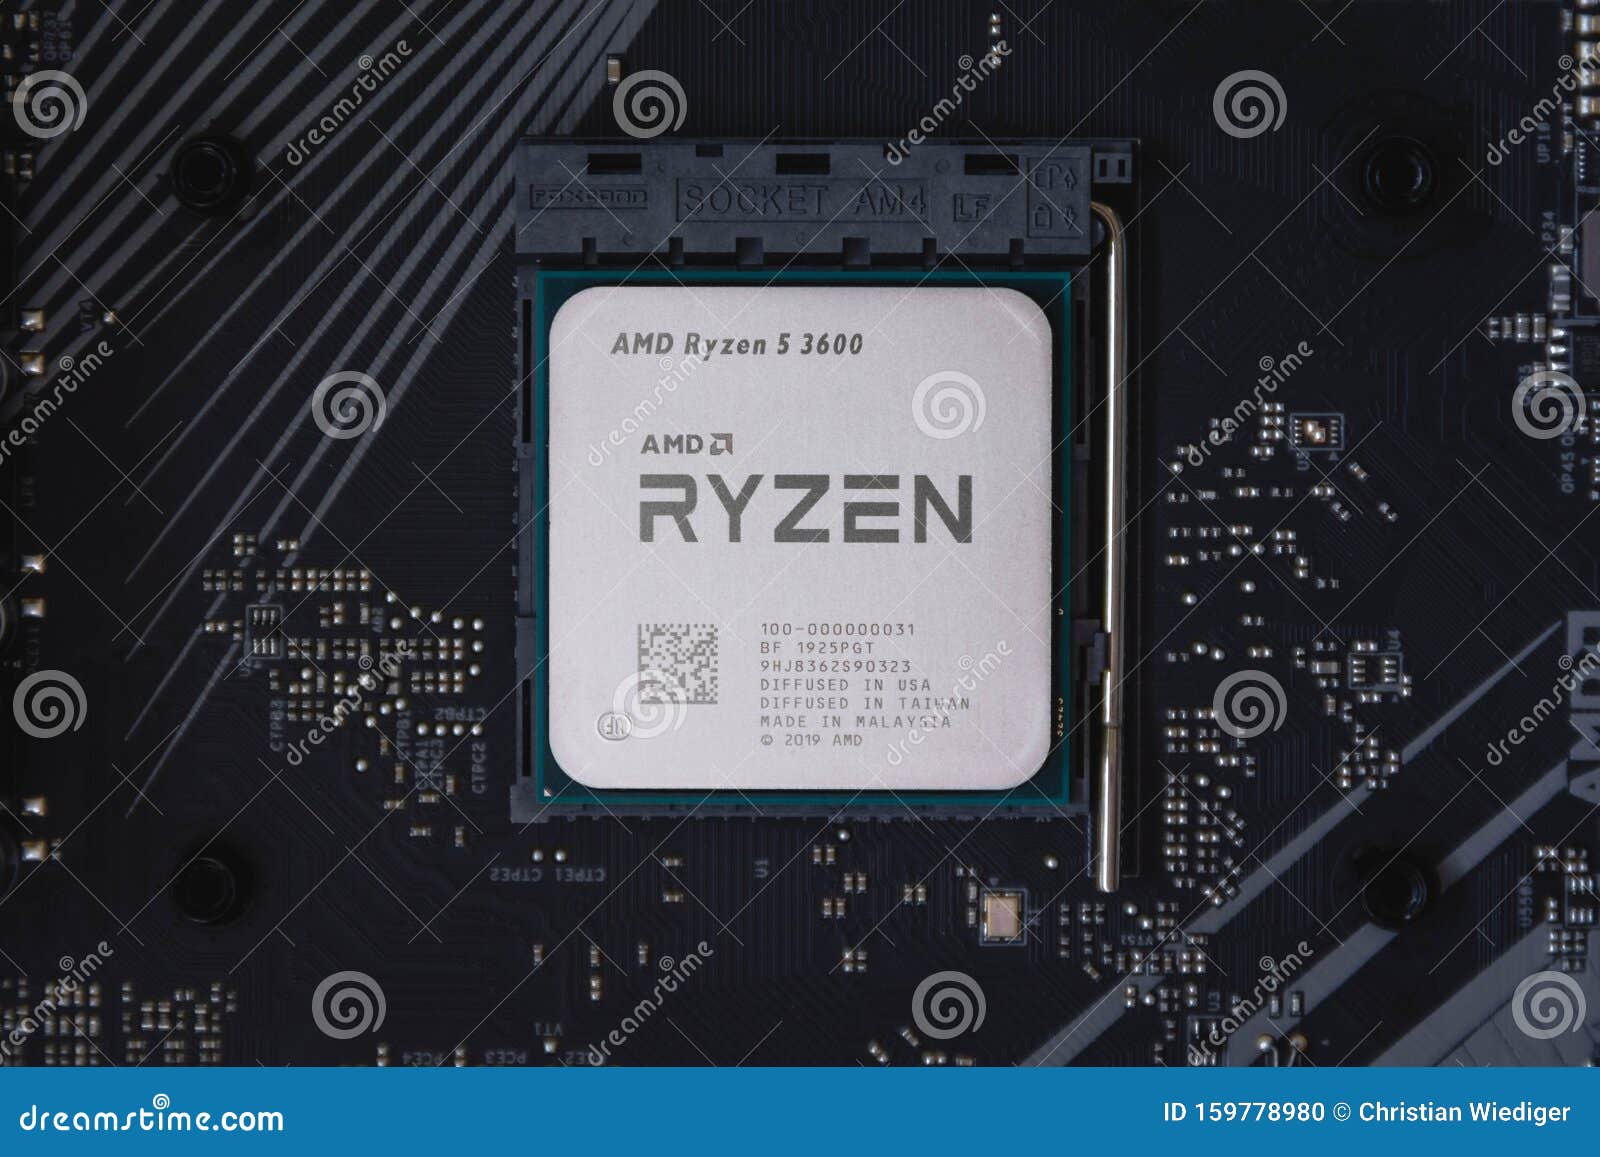 Плата под процессор Ryzen 5 3600 материнская. 6 Нанометров процессор. АМД р7графикс цена. 5 3600 сокет